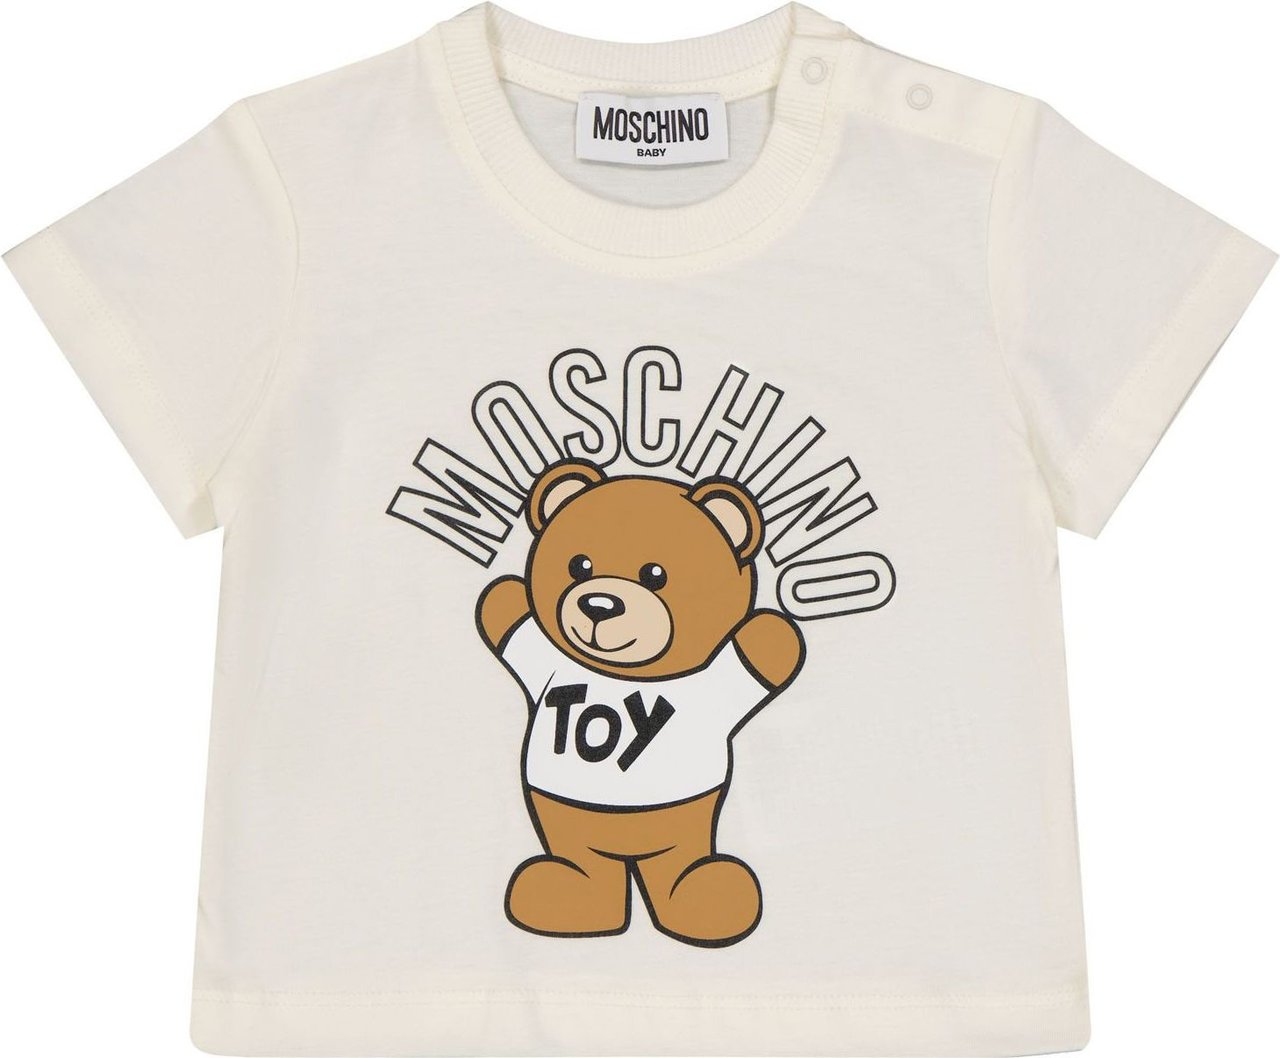 Moschino Moschino MUM032LAA01 baby t-shirt off white Wit